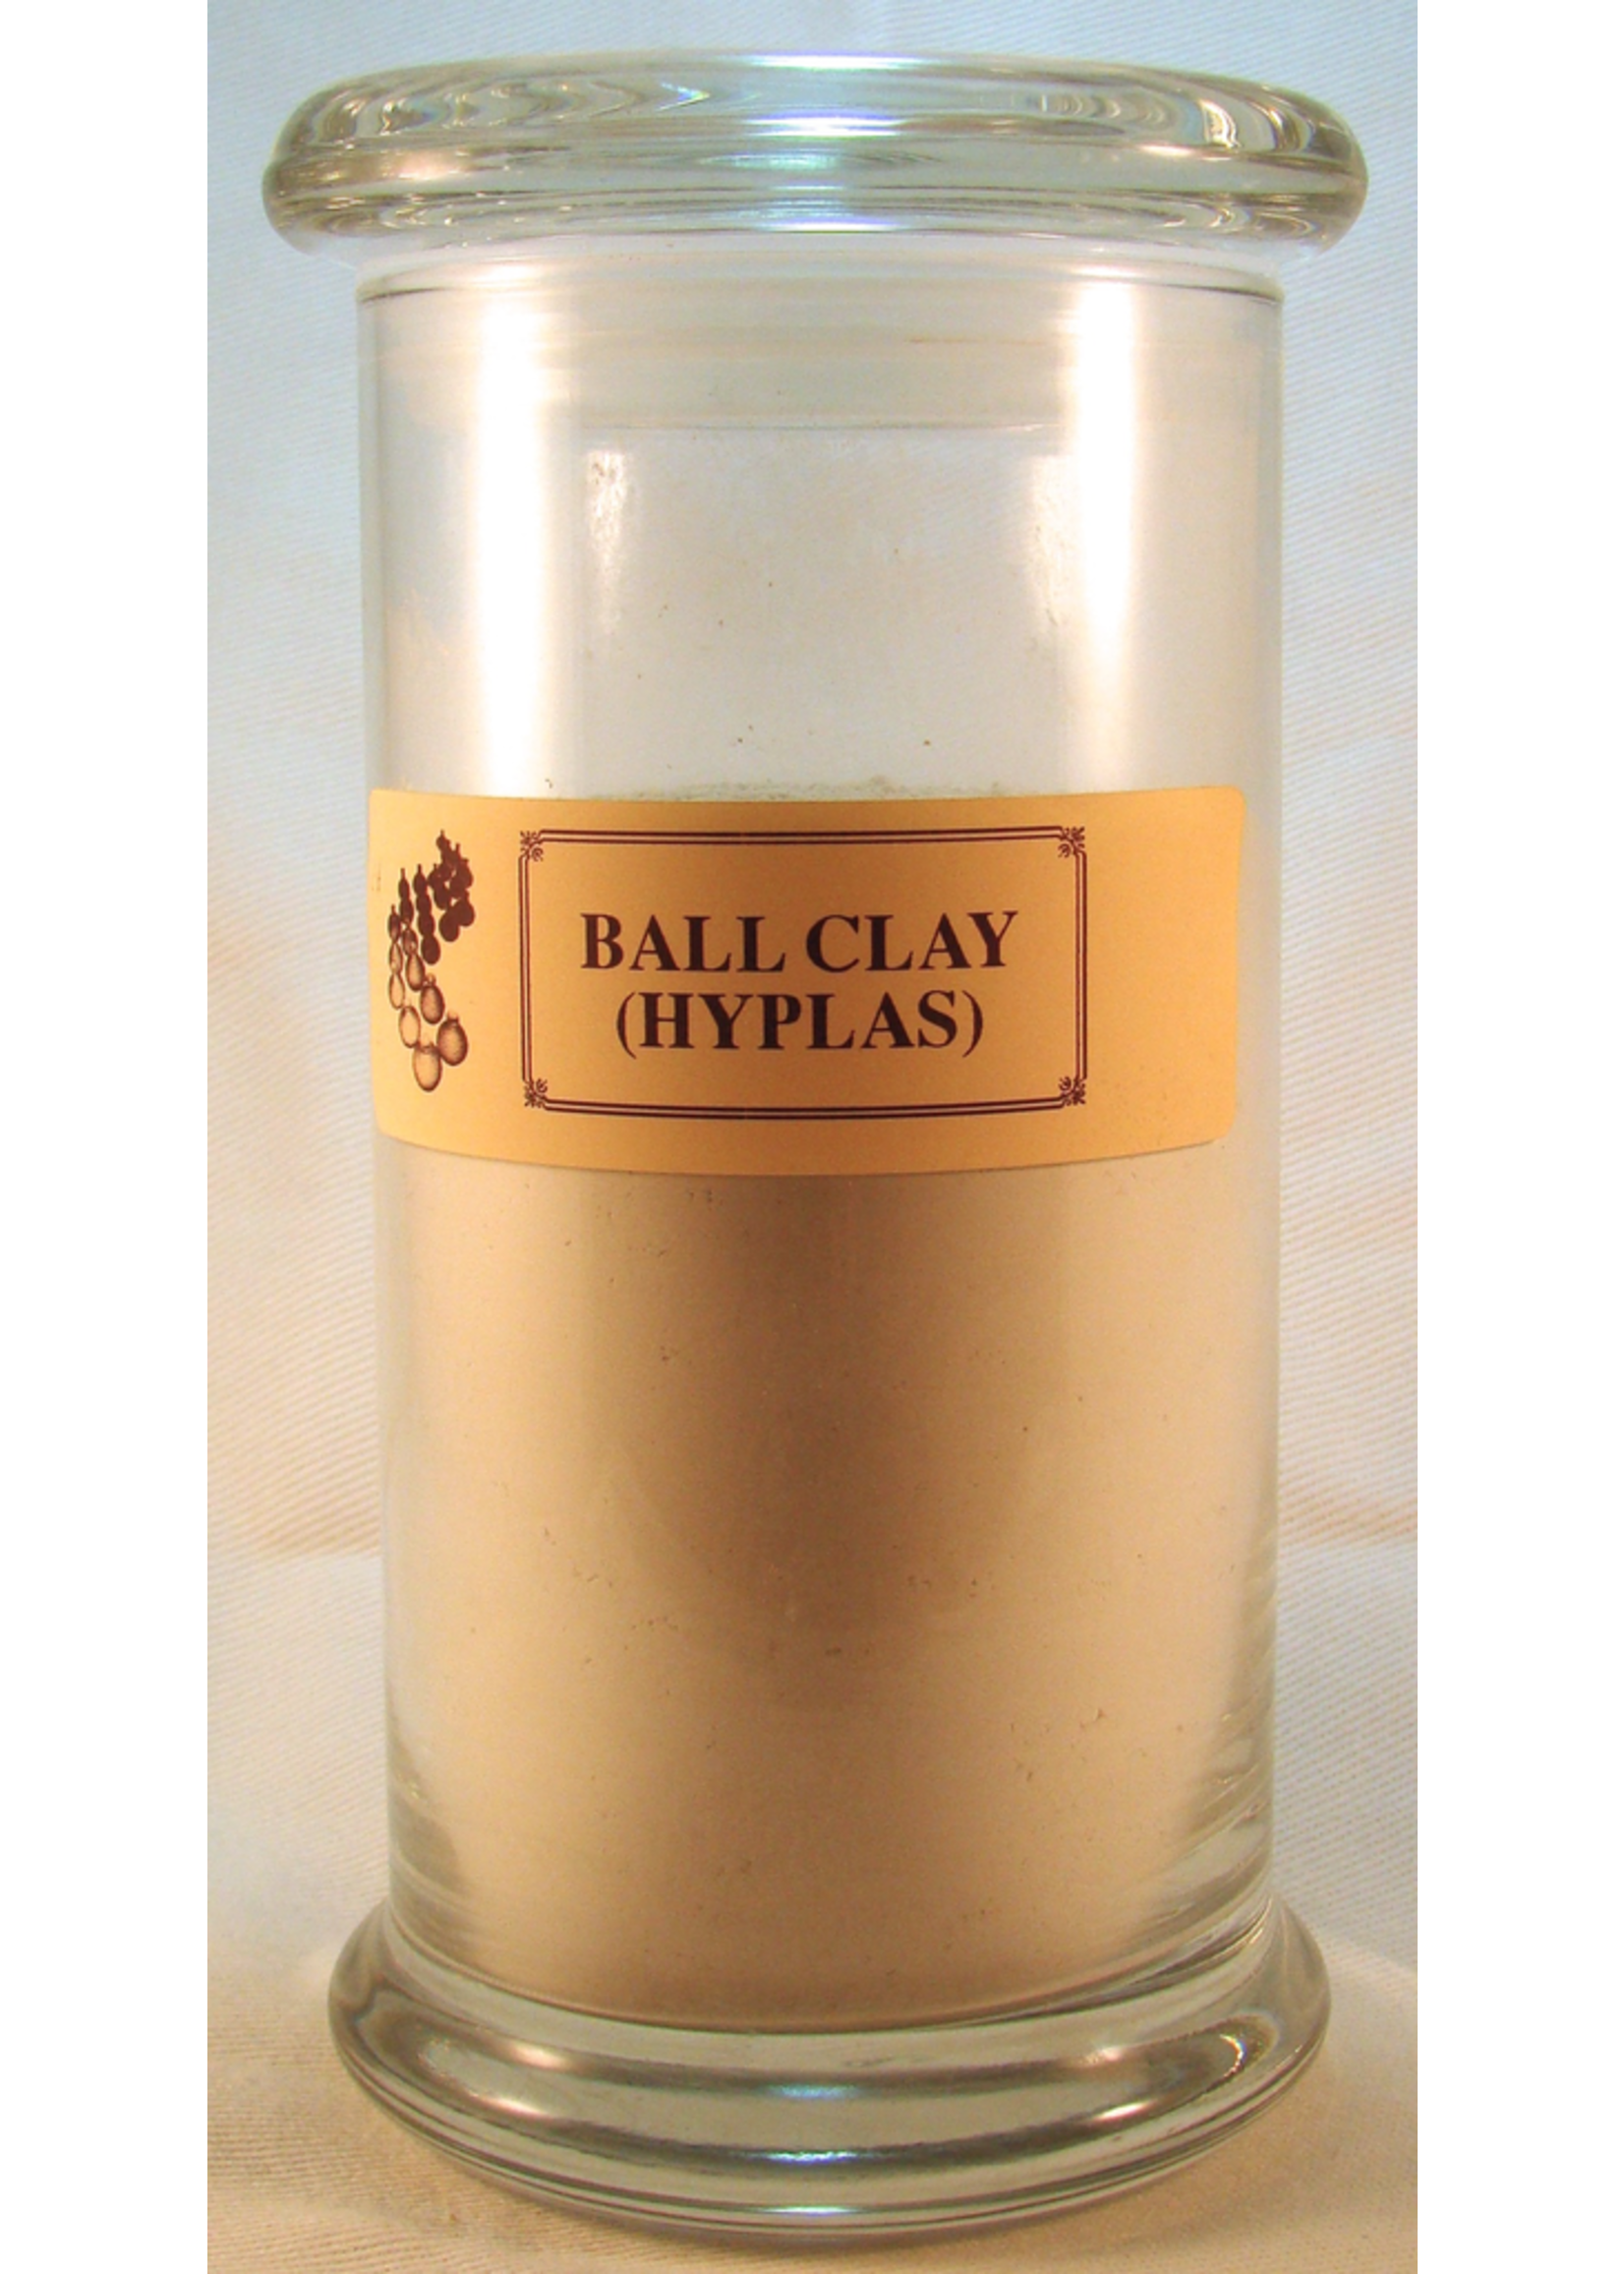 Ball Clay (Hyplas)